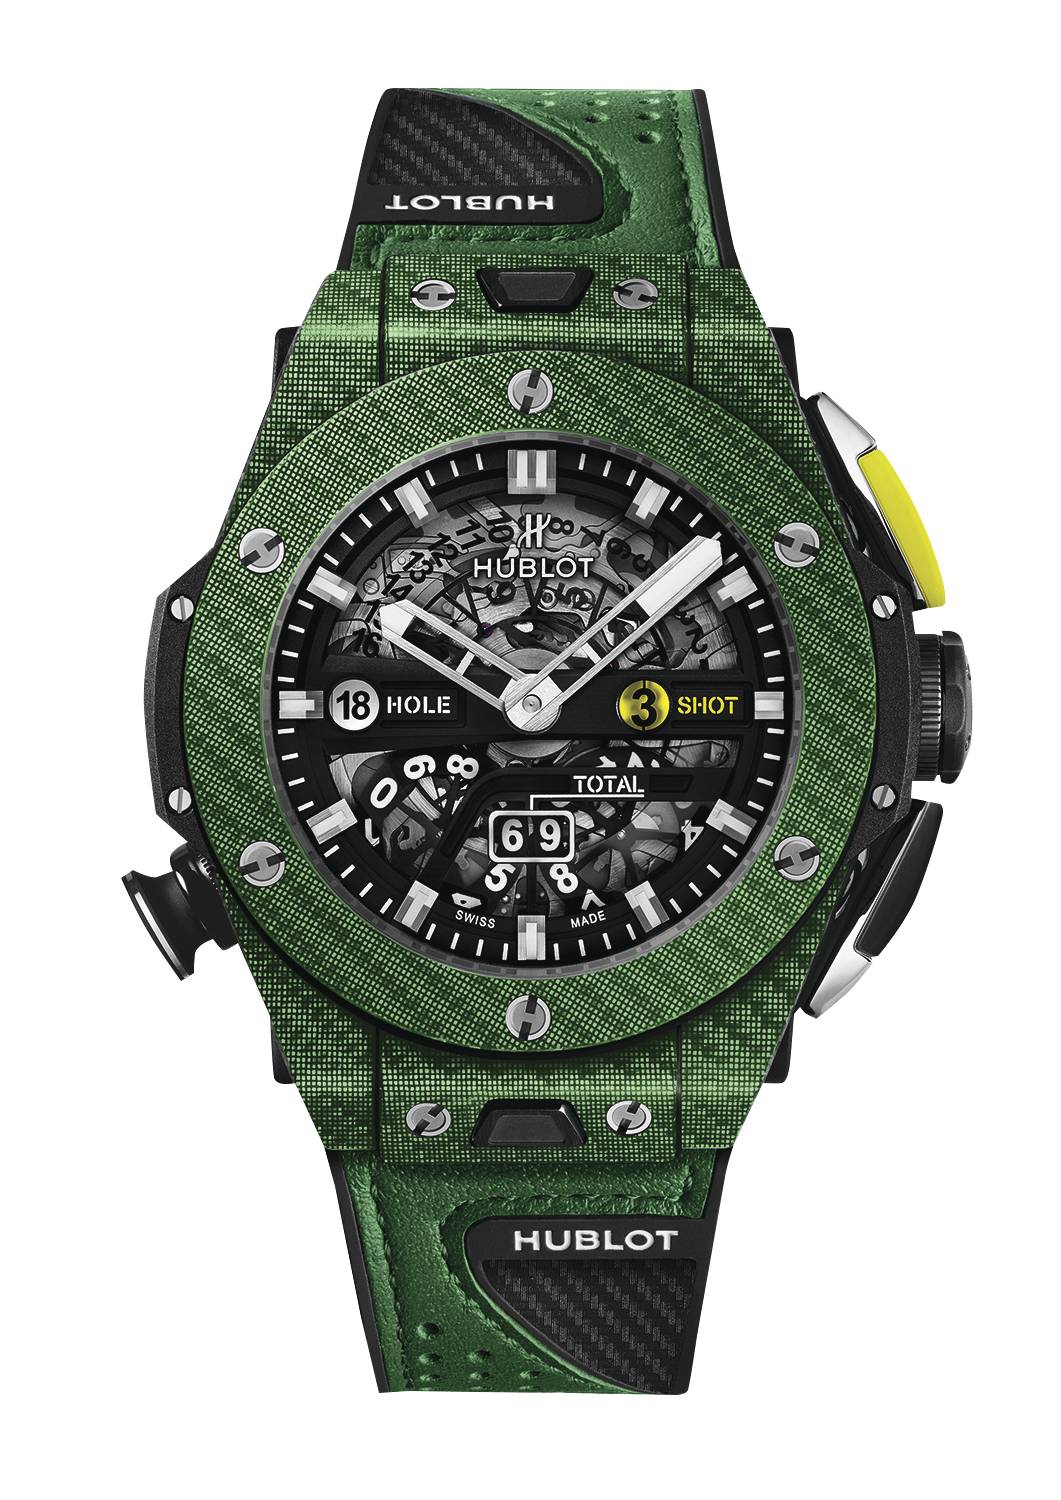 Green Golf Hublot Timepiece